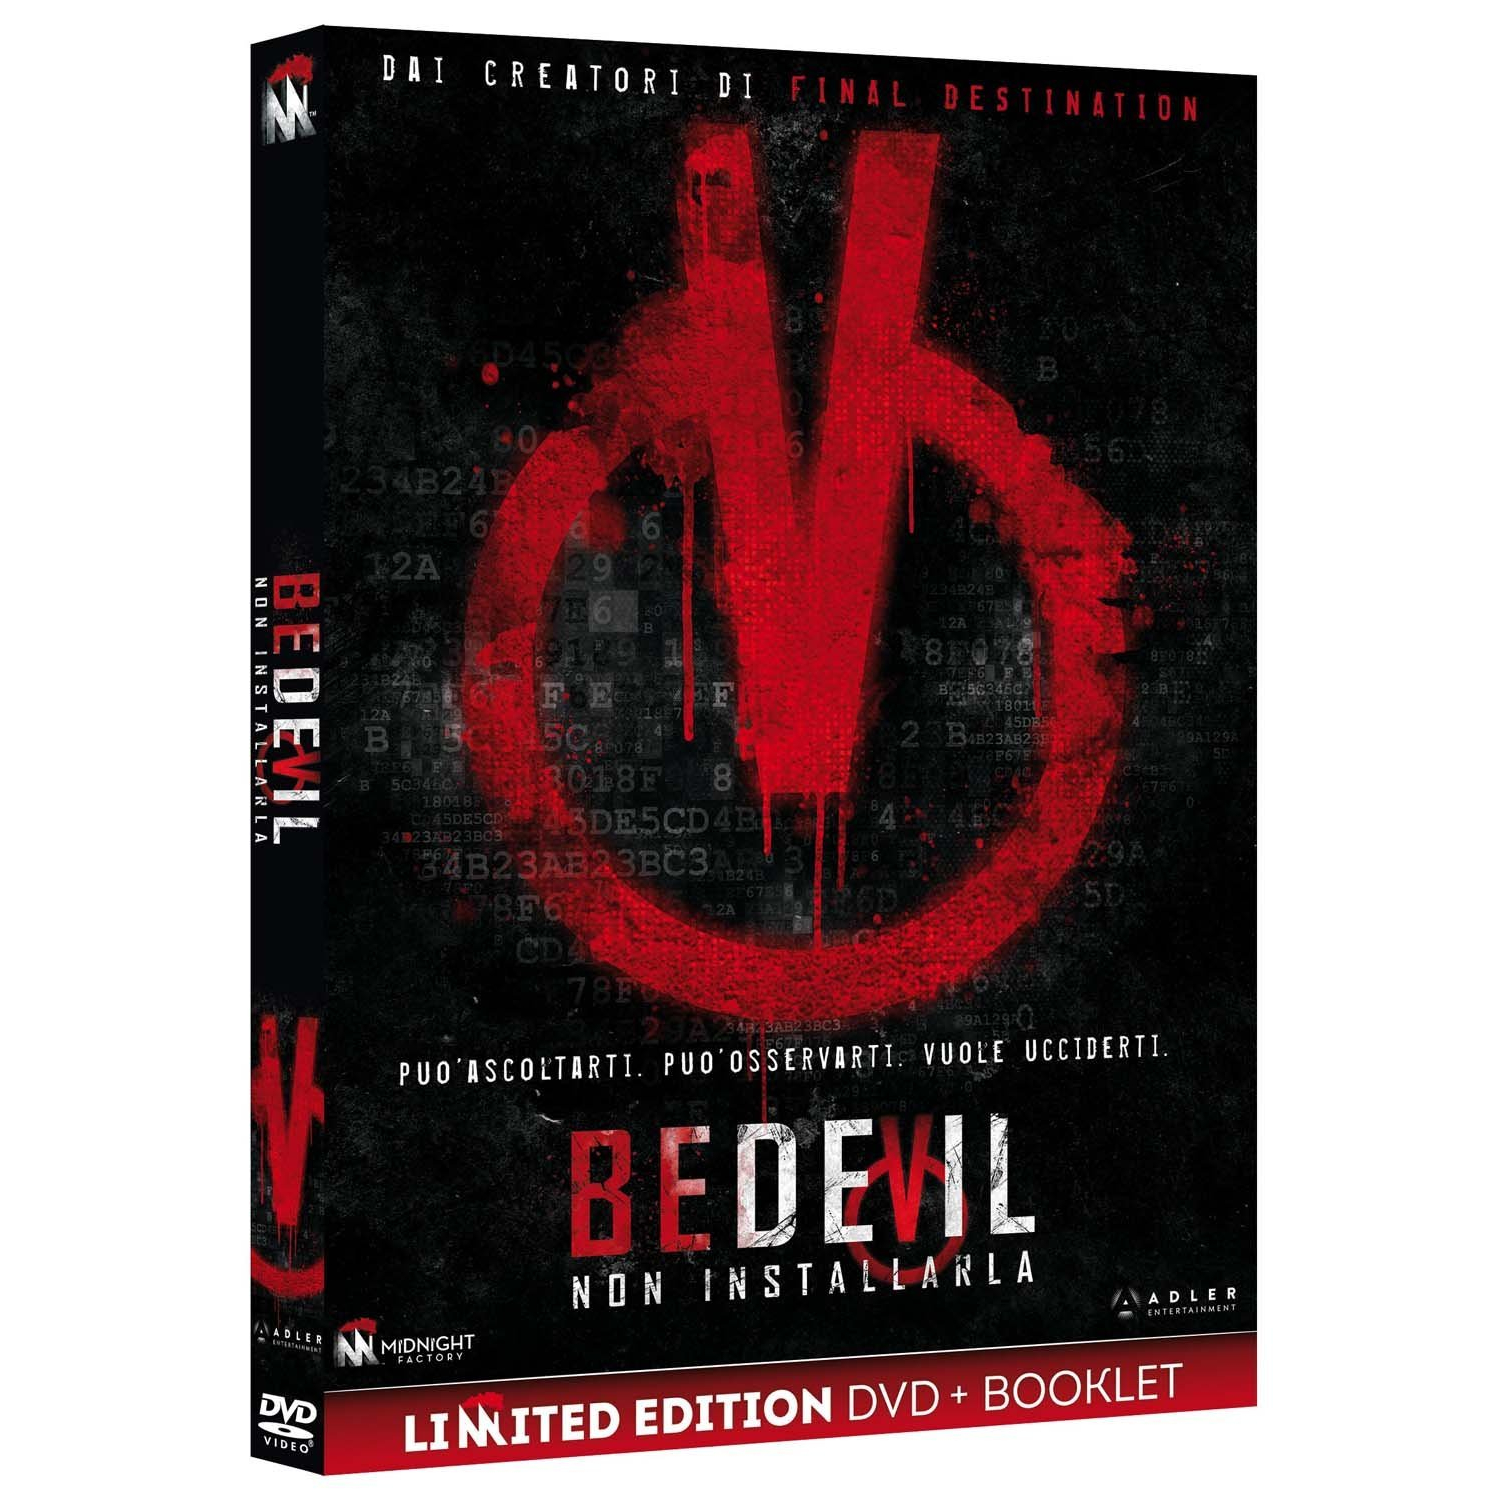 BEDEVIL - NON INSTALLARLA (DVD+BOOKLET)